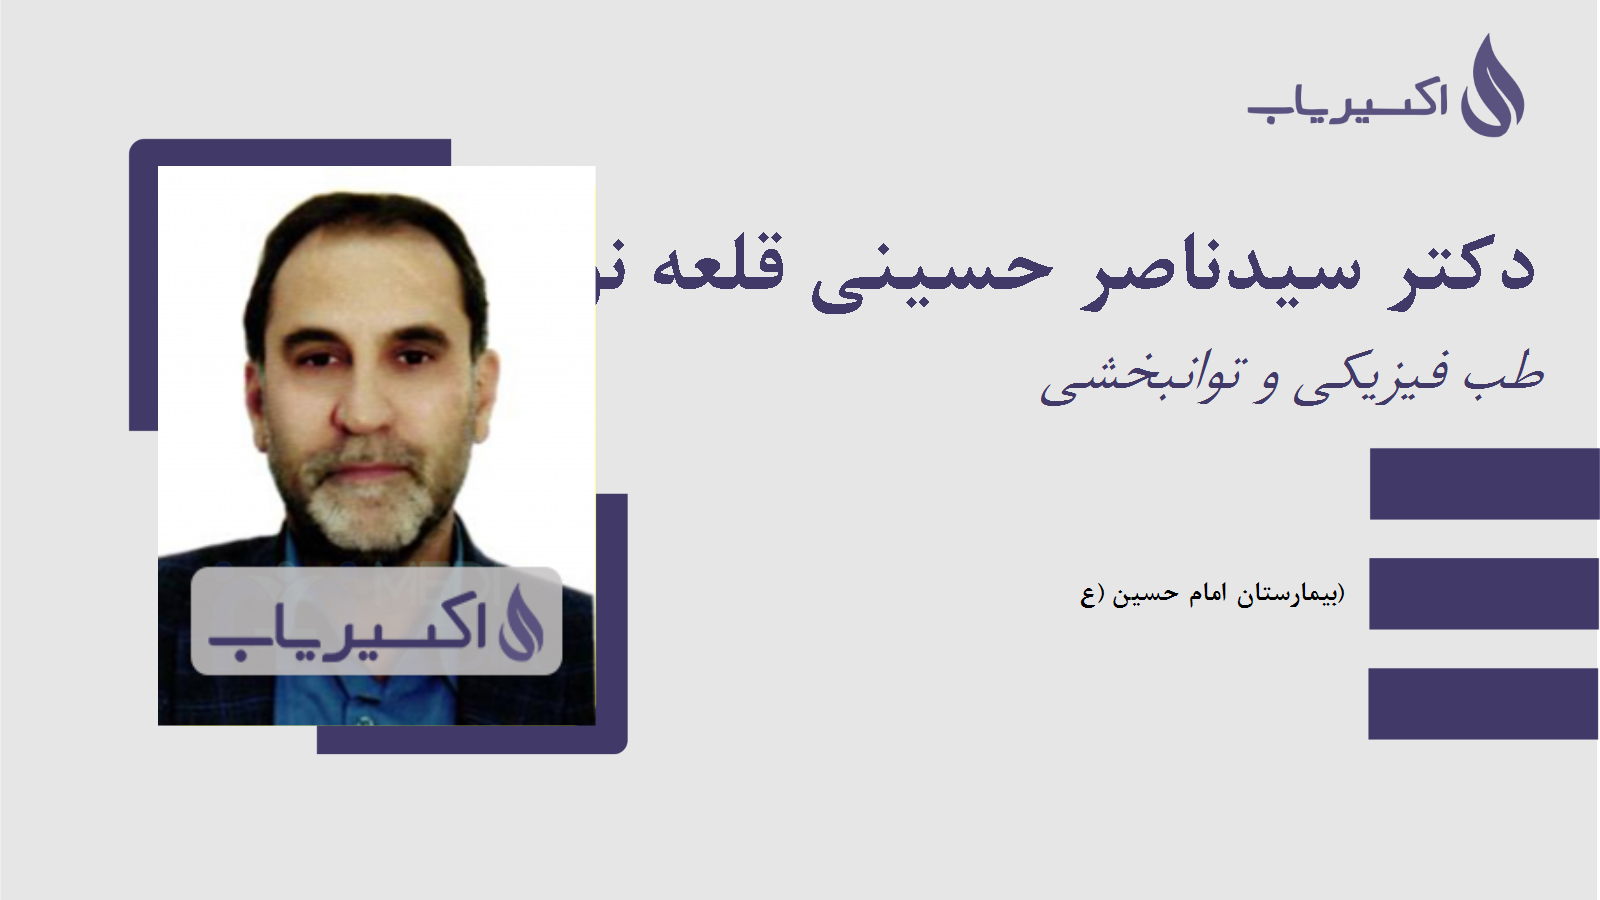 مطب دکتر سیدناصر حسینی قلعه نوئی